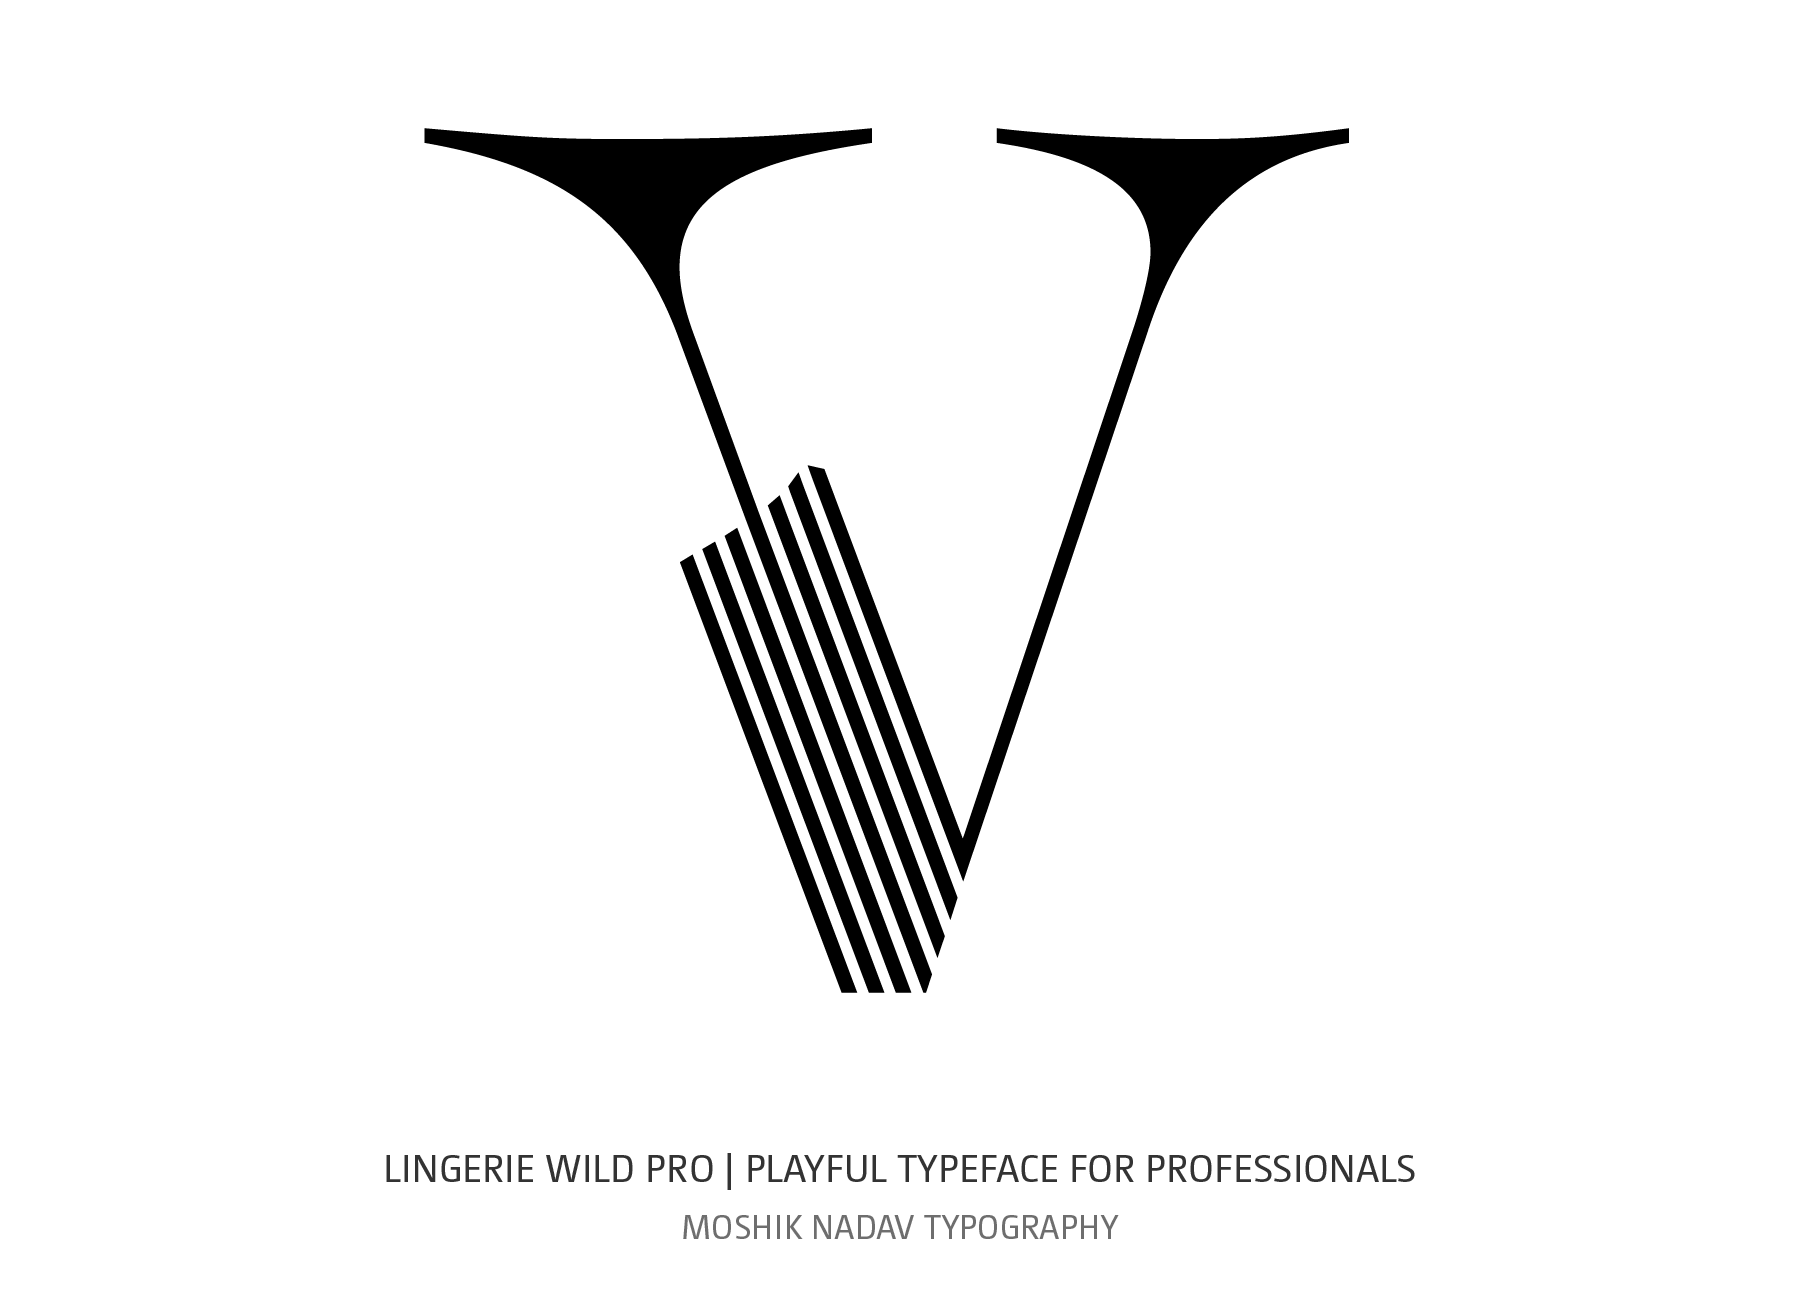 Lingerie Wild Pro Typeface designed for Fashion logos and fashion magazines layout